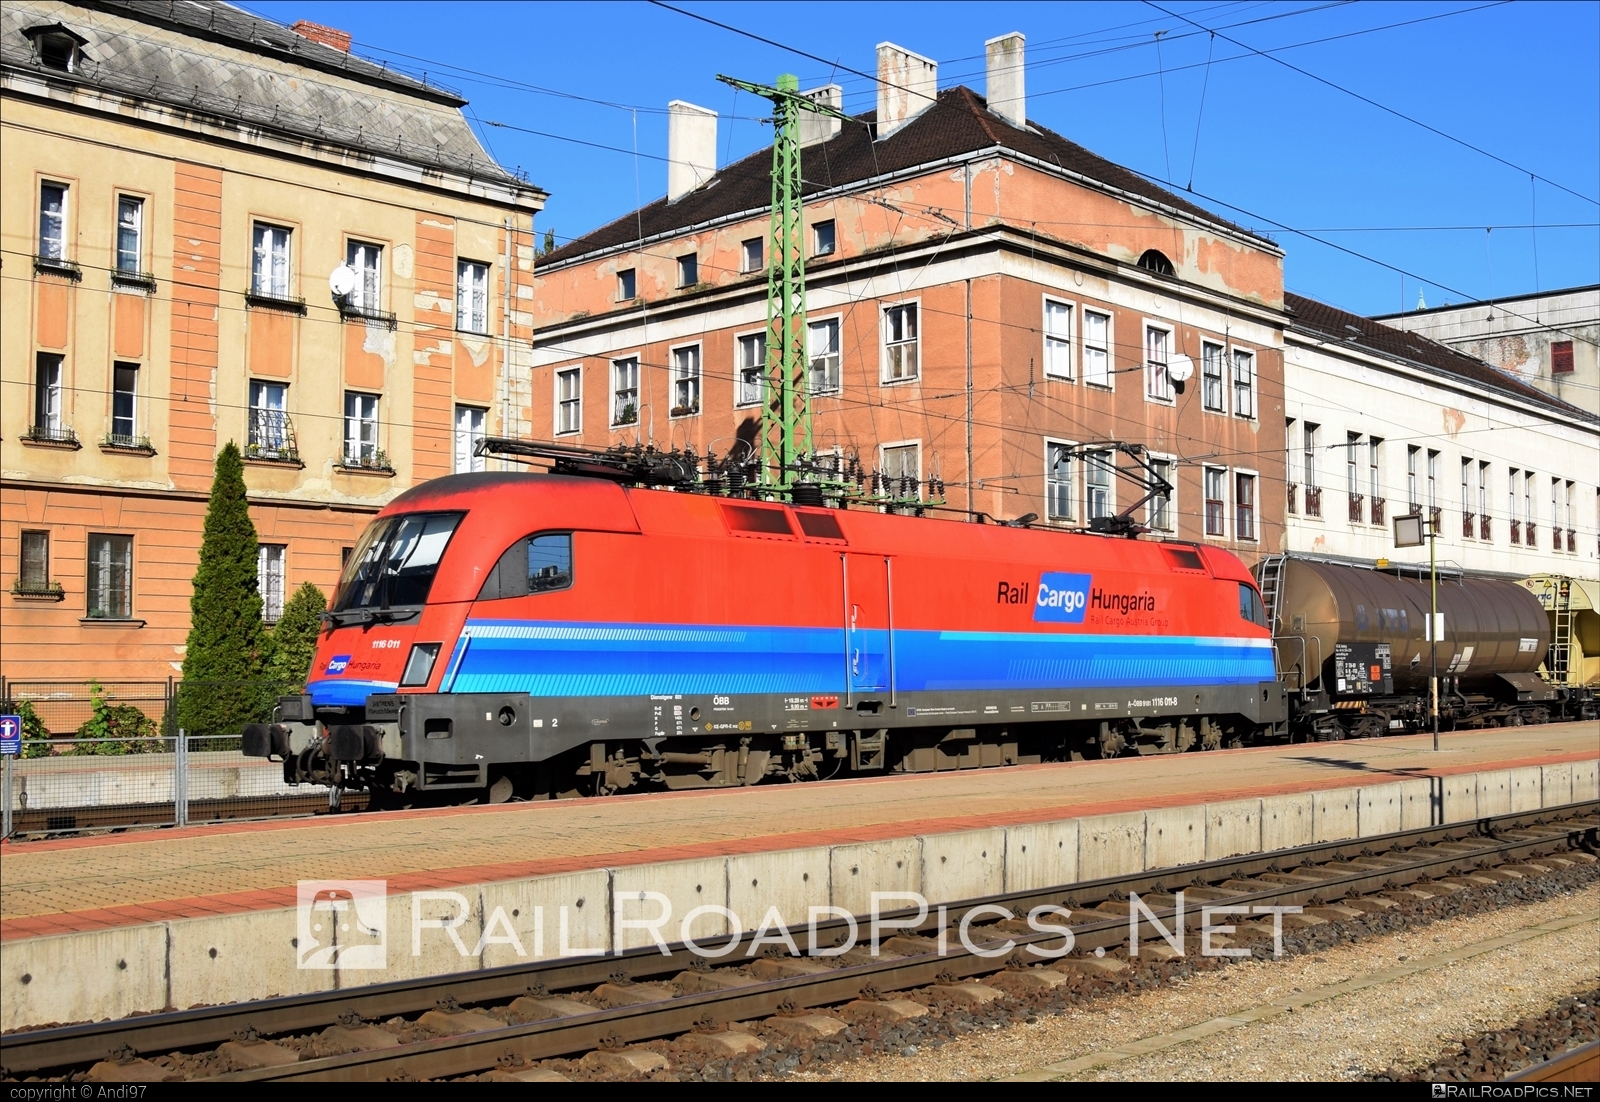 Siemens ES 64 U2 - 1116 011 operated by Rail Cargo Carrier Kft. #es64 #es64u2 #eurosprinter #kesselwagen #obb #osterreichischebundesbahnen #rch #siemens #siemensEs64 #siemensEs64u2 #siemenstaurus #tankwagon #taurus #tauruslocomotive